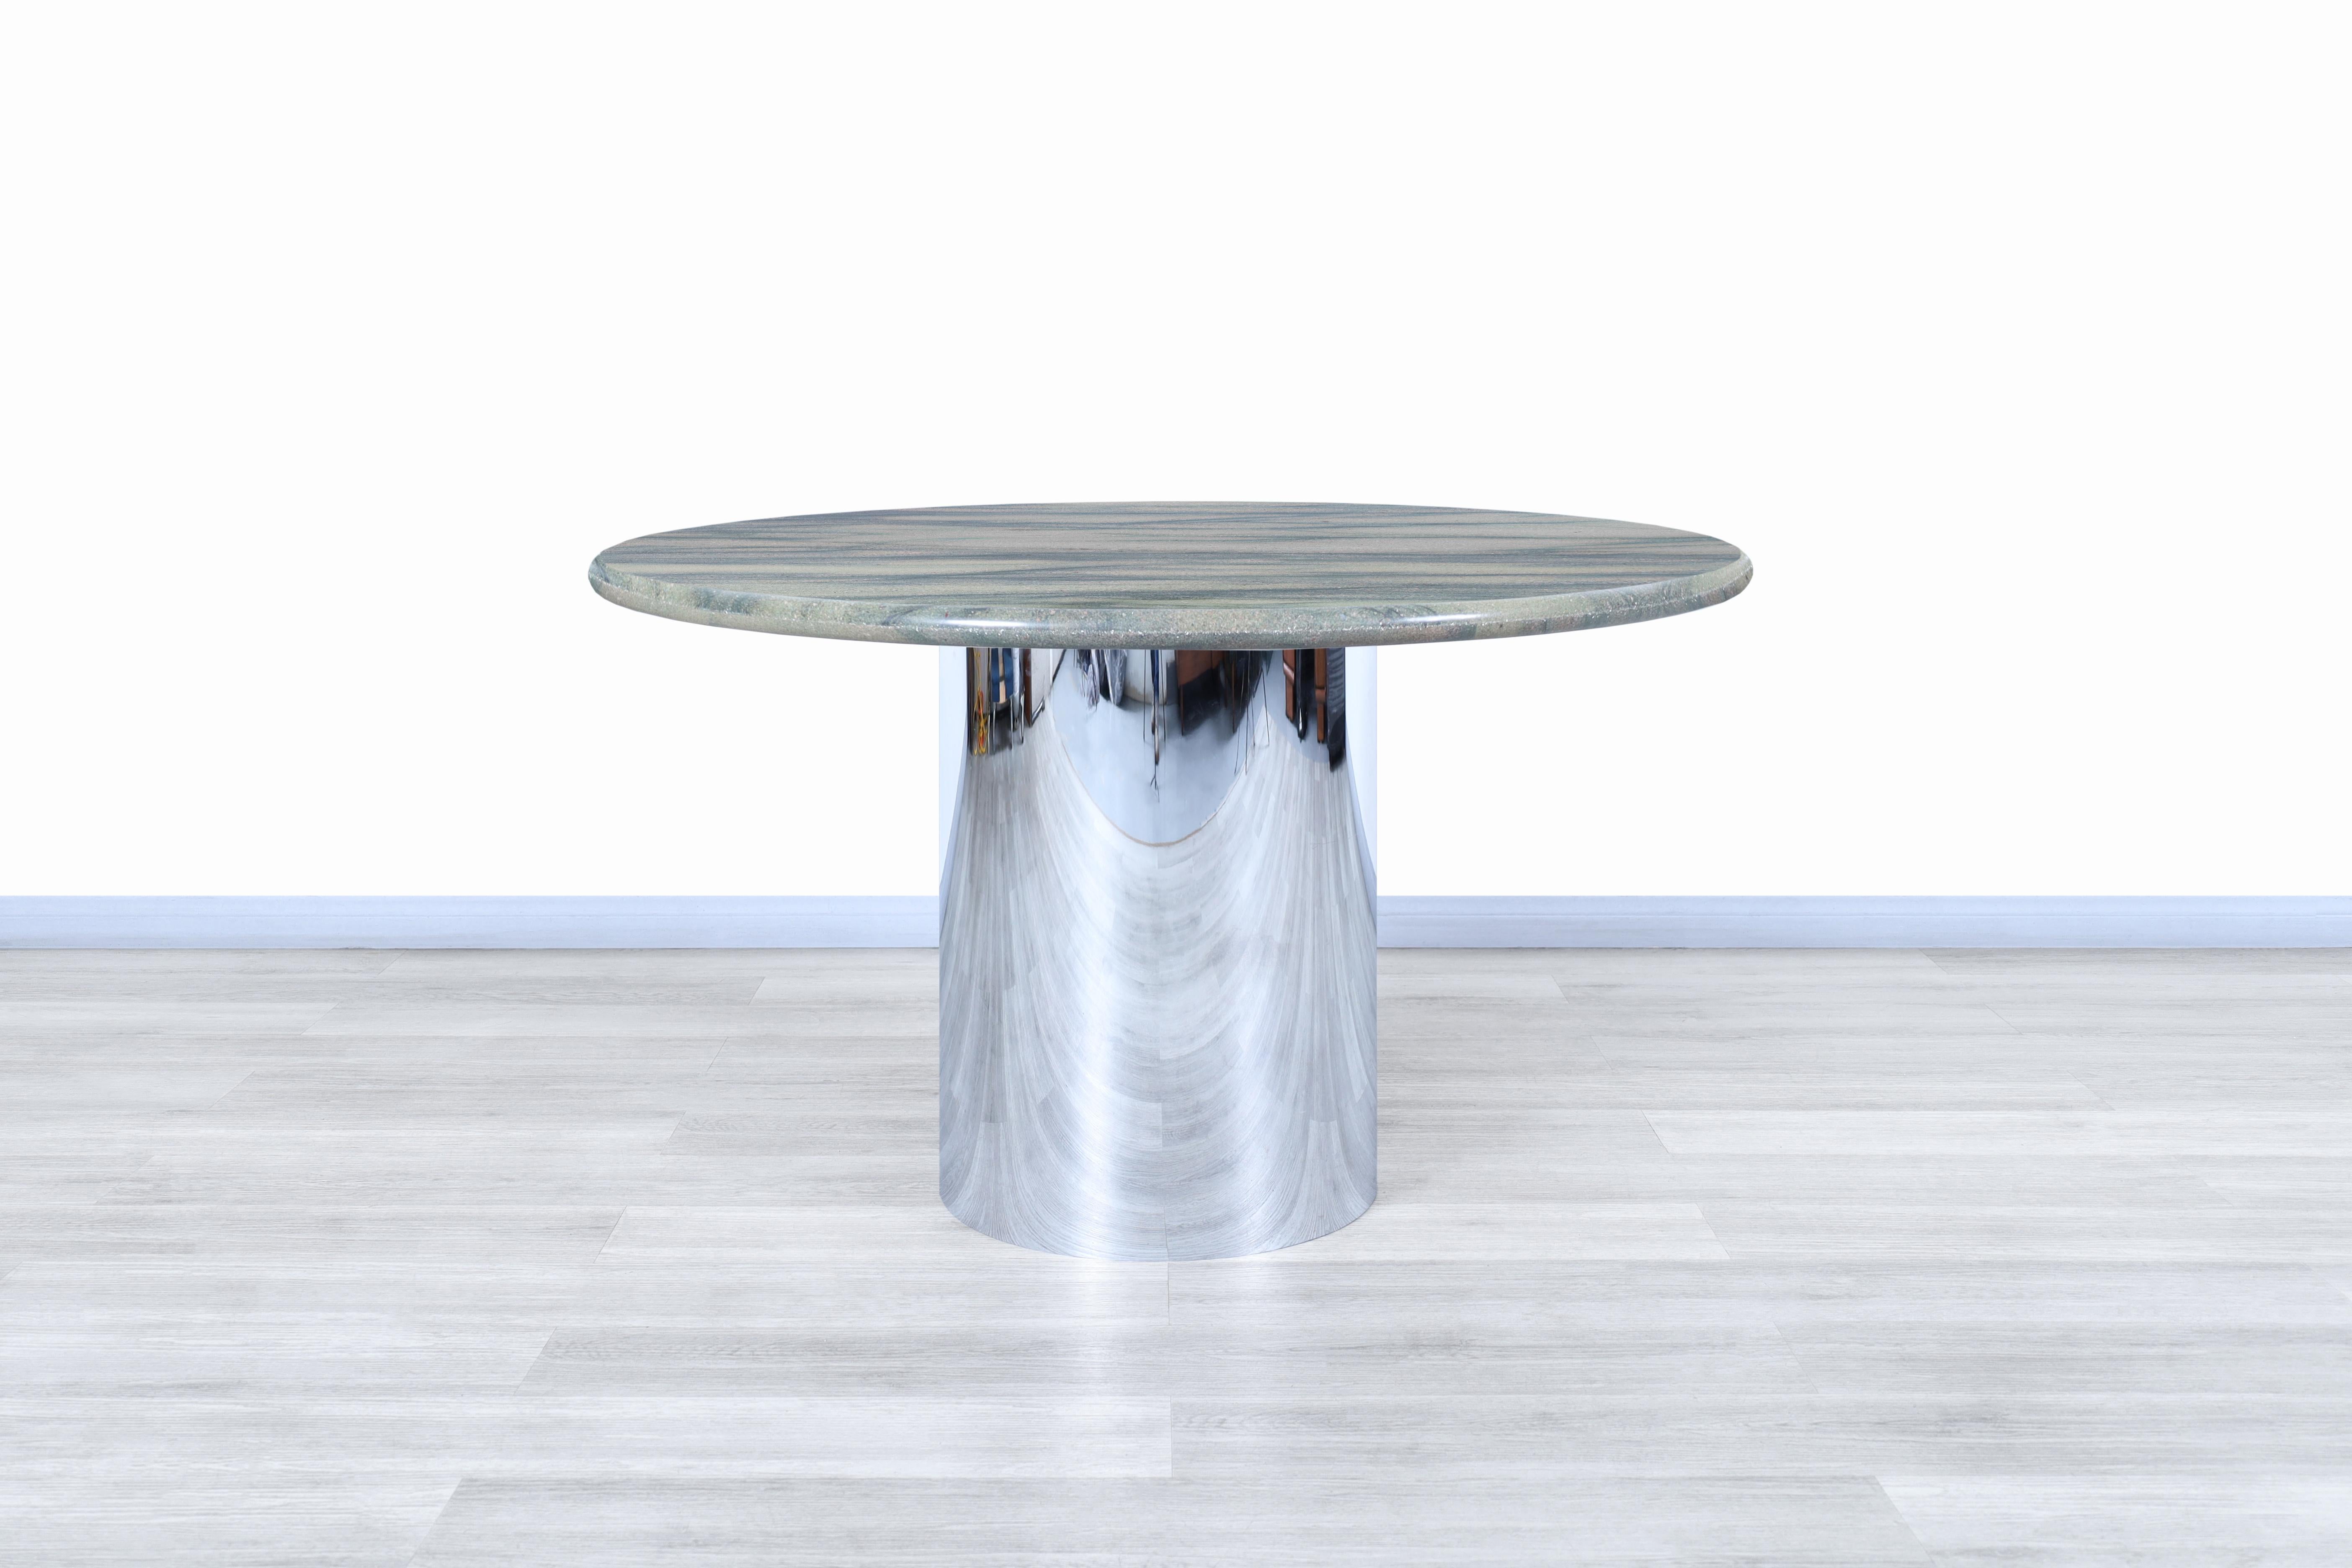 Wunderschöner runder Esstisch aus Marmor und Edelstahl, entworfen und hergestellt in den Vereinigten Staaten, ca. 1980er Jahre. Dieser Tisch hat ein modernes Design, bei dem die reiche Maserung die höchste Qualität des Marmors kennzeichnet, der für